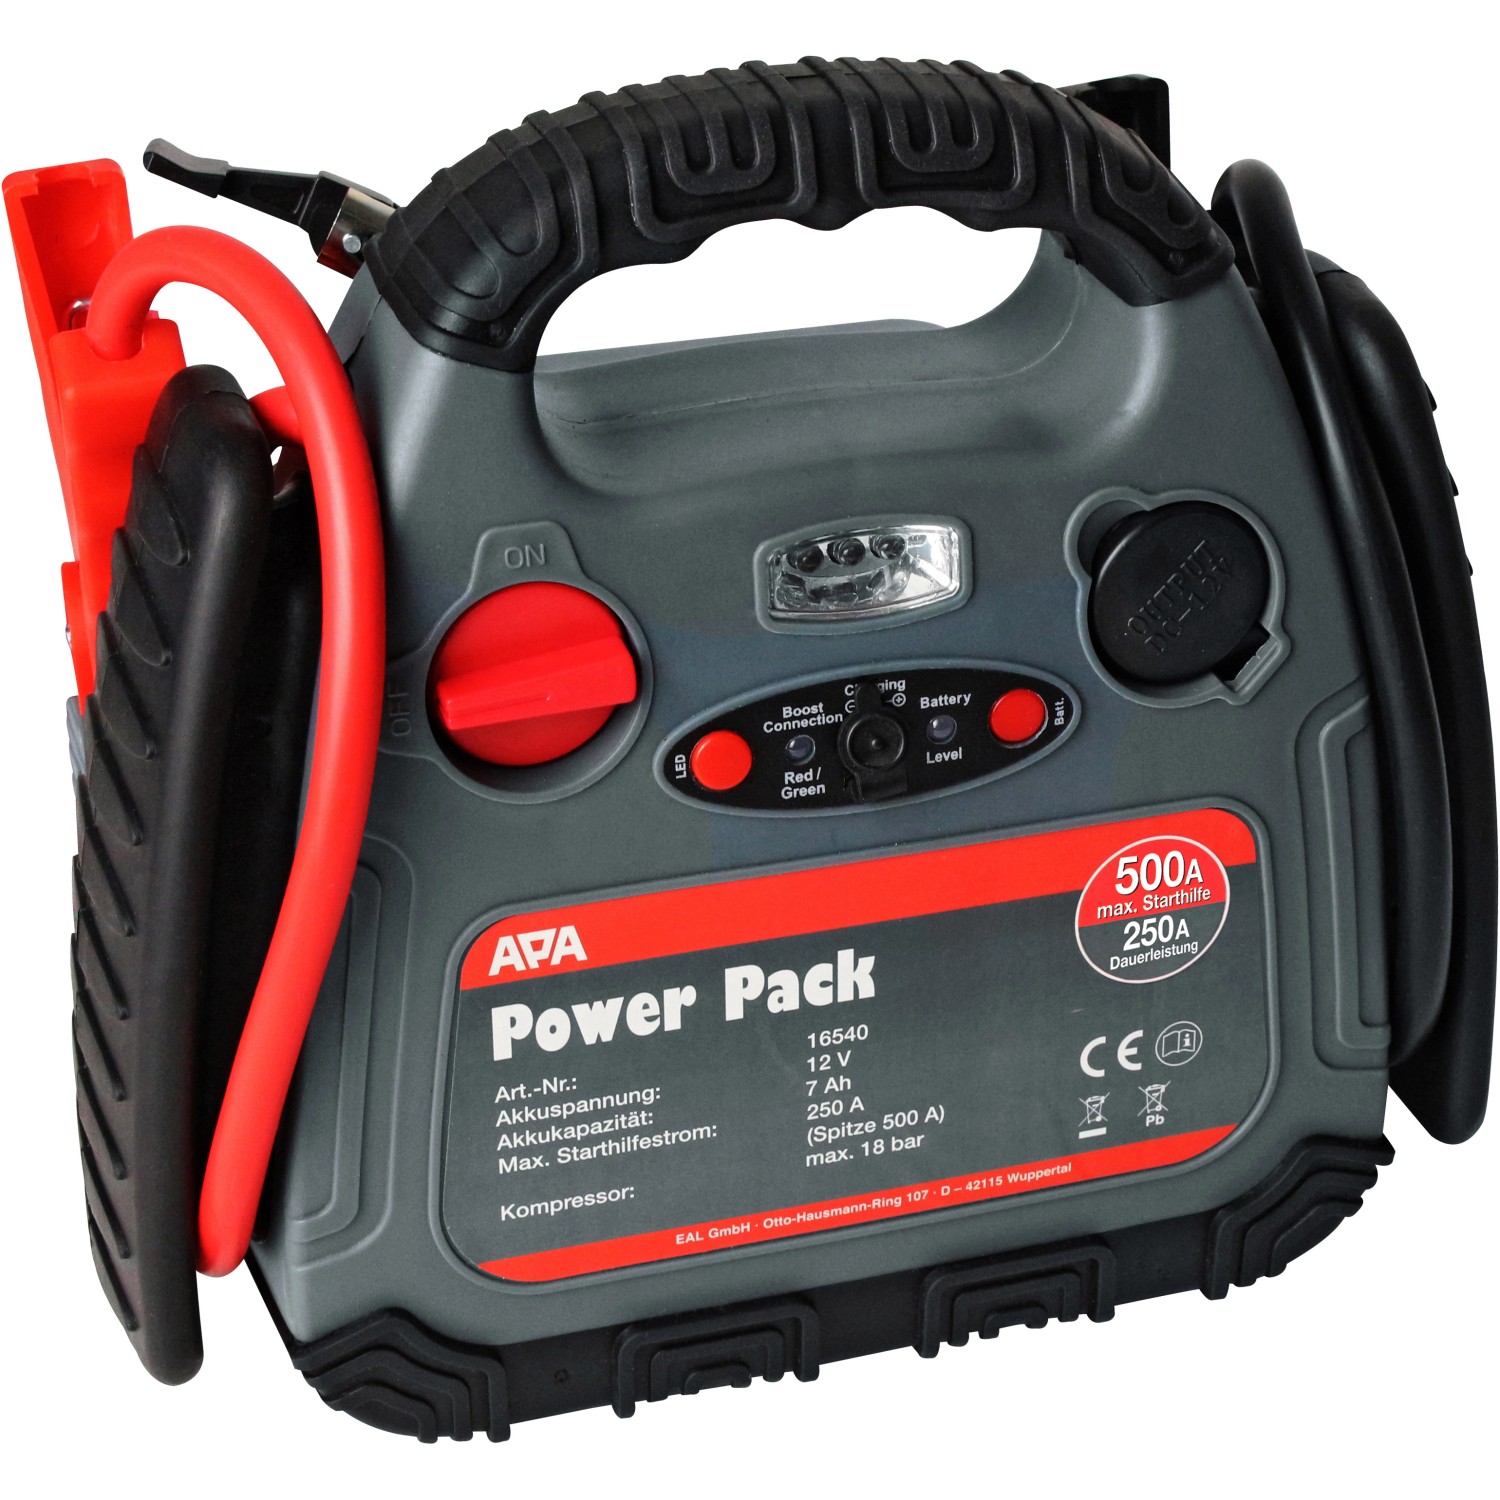 APA Starthilfe Powerpack 250 A mit Kompressor günstig online kaufen